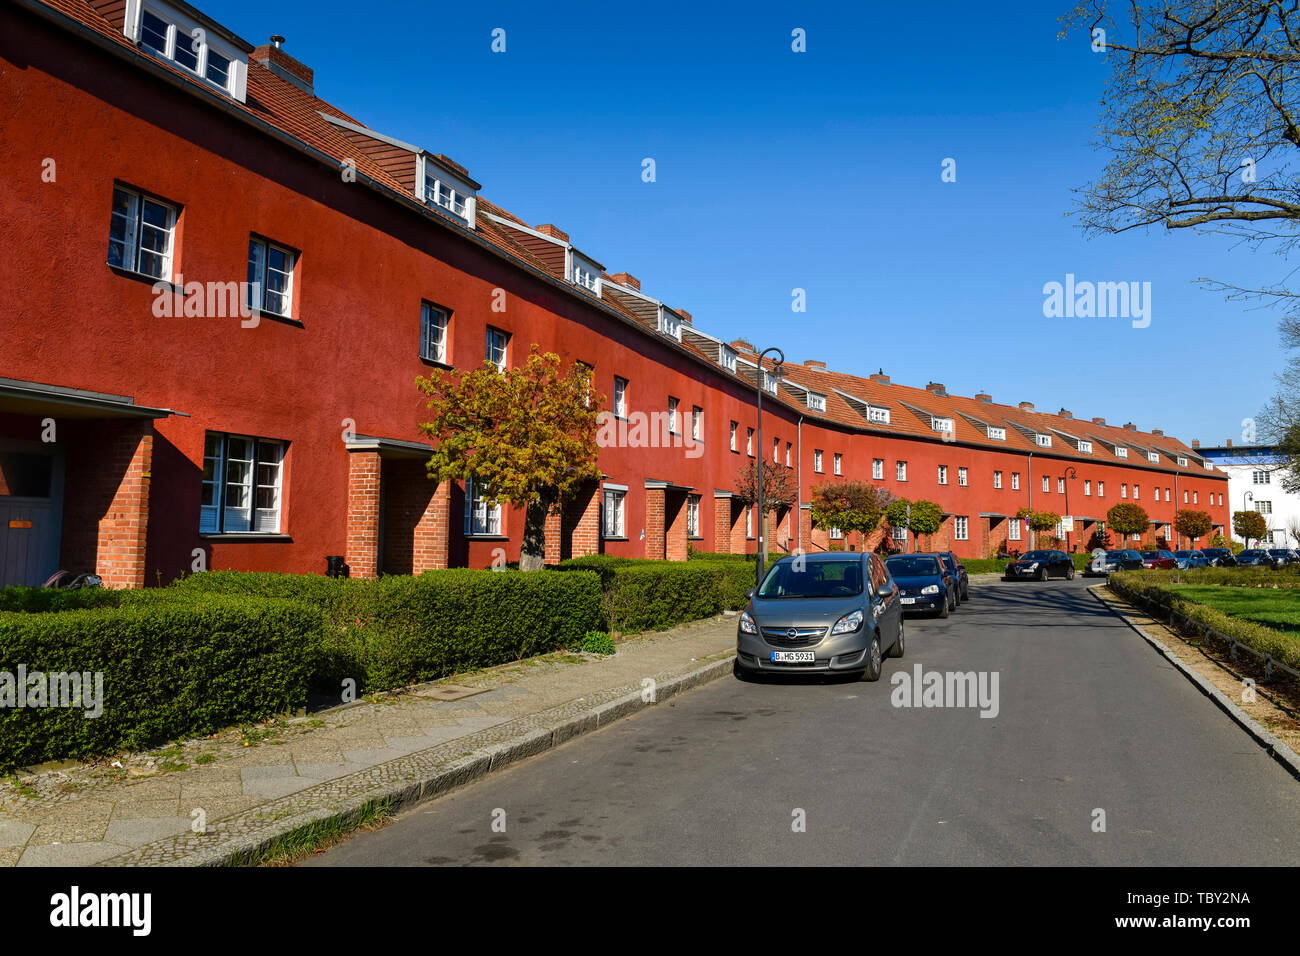 Case di abitazione, Hüsung, insediamento a ferro di cavallo, Britz, Neukölln, Berlino, Germania, Wohnhäuser, Hufeisensiedlung, Deutschland Foto Stock